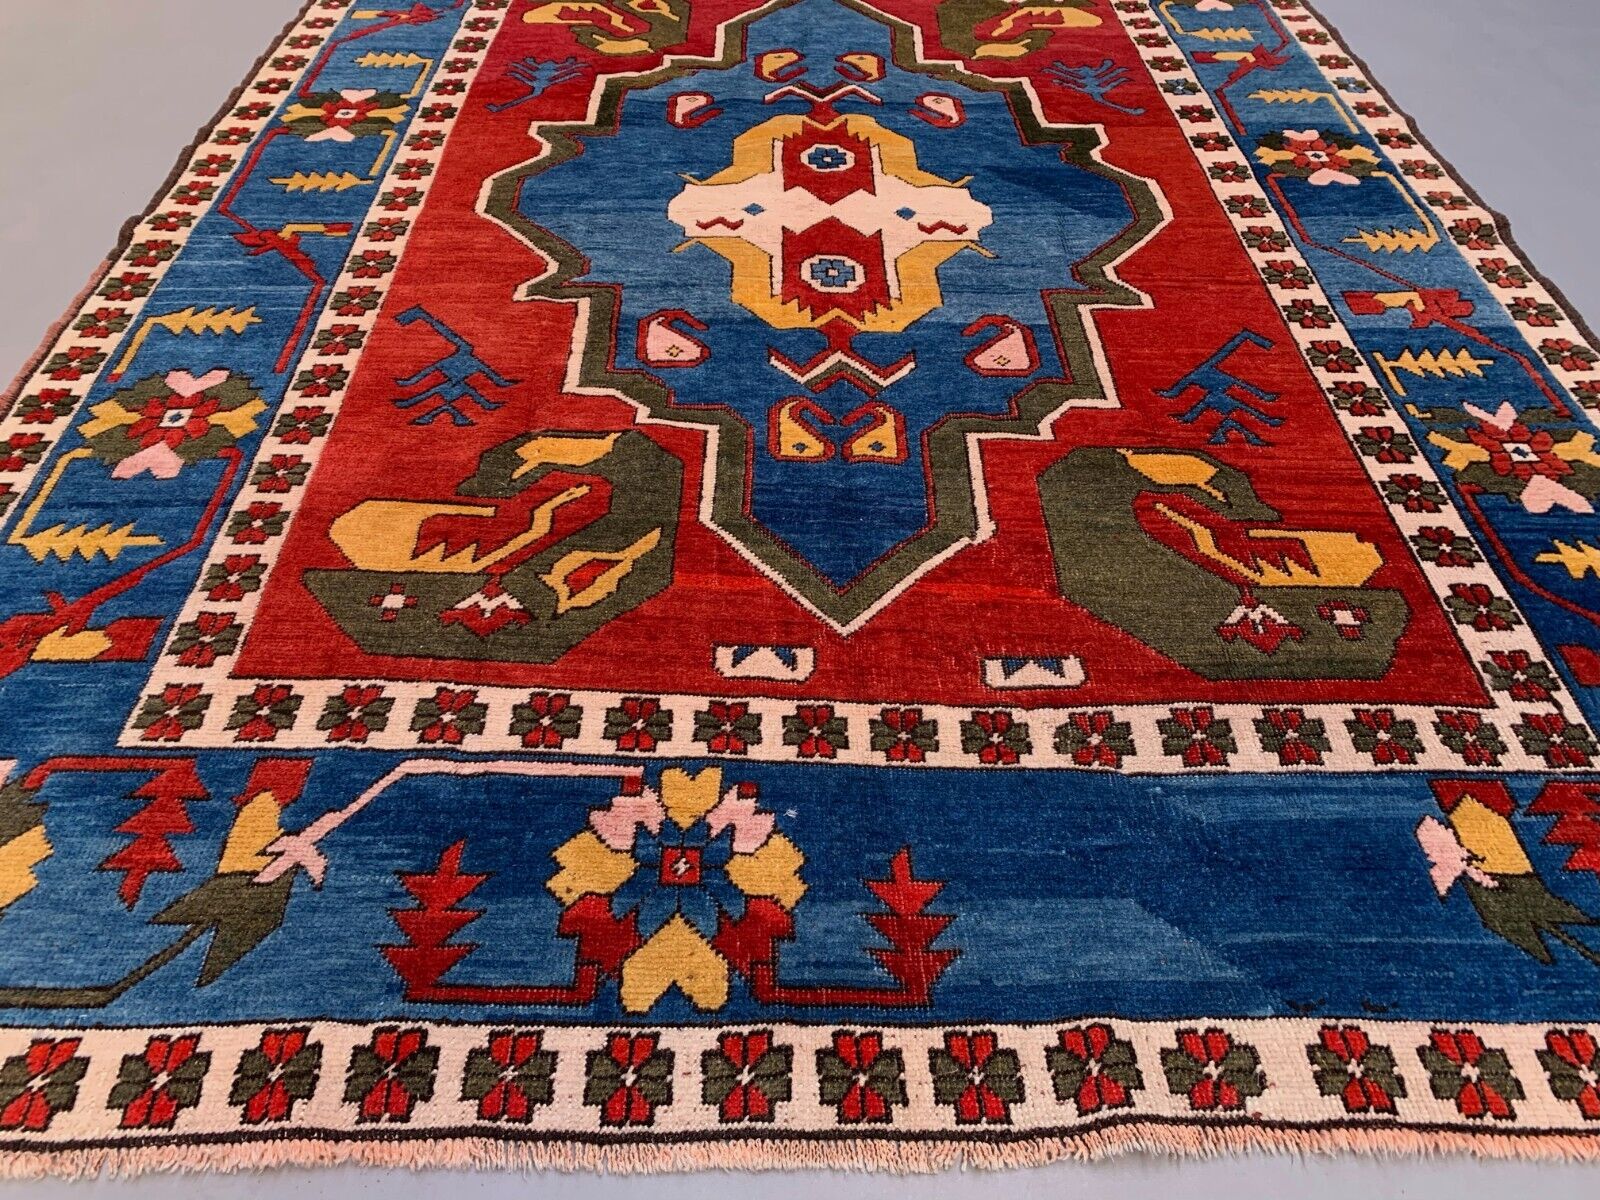 XL Old Turkish Kazak Rug Oriental 306x221 cm vintage carpet, Tribal Large